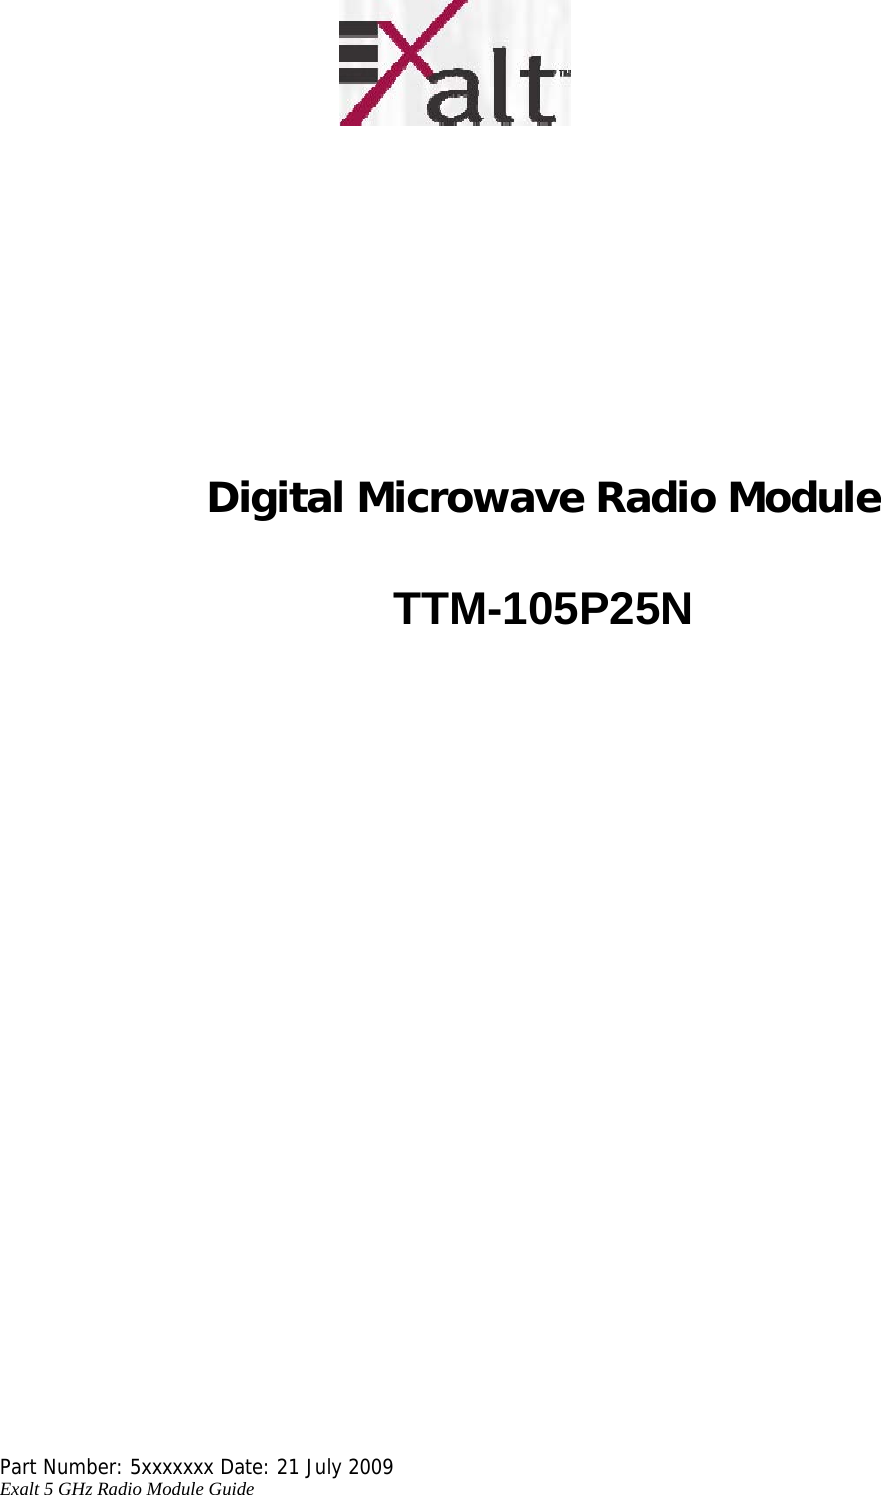             Digital Microwave Radio Module    TTM-105P25N                                 Part Number: 5xxxxxxx Date: 21 July 2009  Exalt 5 GHz Radio Module Guide   